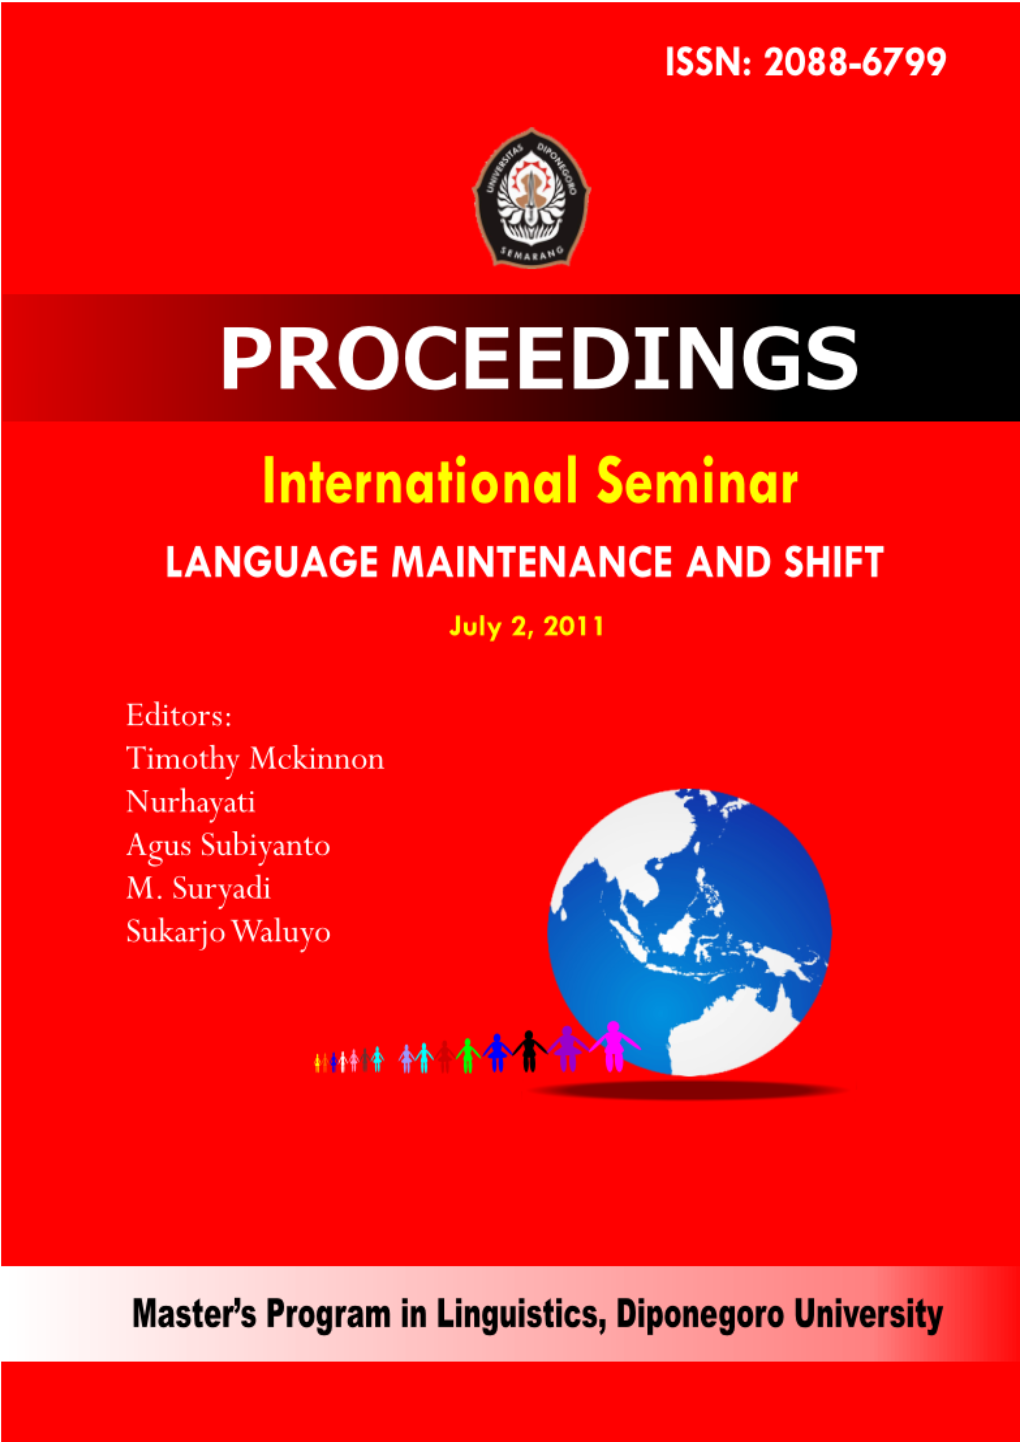 International Seminar “Language Maintenance and Shift” July 2, 2011